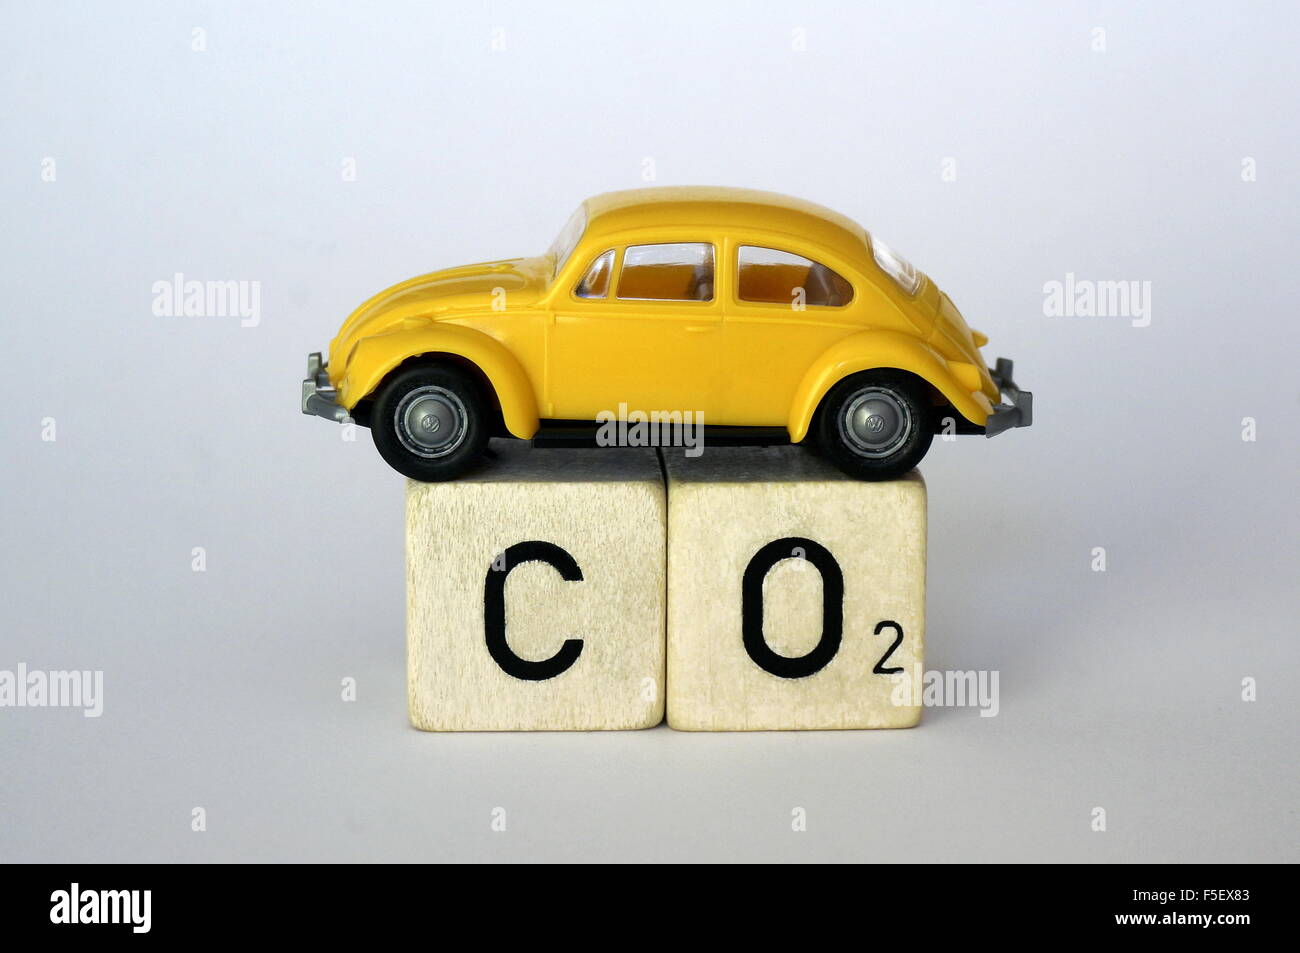 ILLUSTRATION - ein VW Käfer Modell auf Cube Buchstaben, die die Gesamtformel "CO2" für Kohlendioxid zu schreiben. Das Foto wurde am 28. September 2015. Foto: S. Steinach - kein Draht-Dienst- Stockfoto